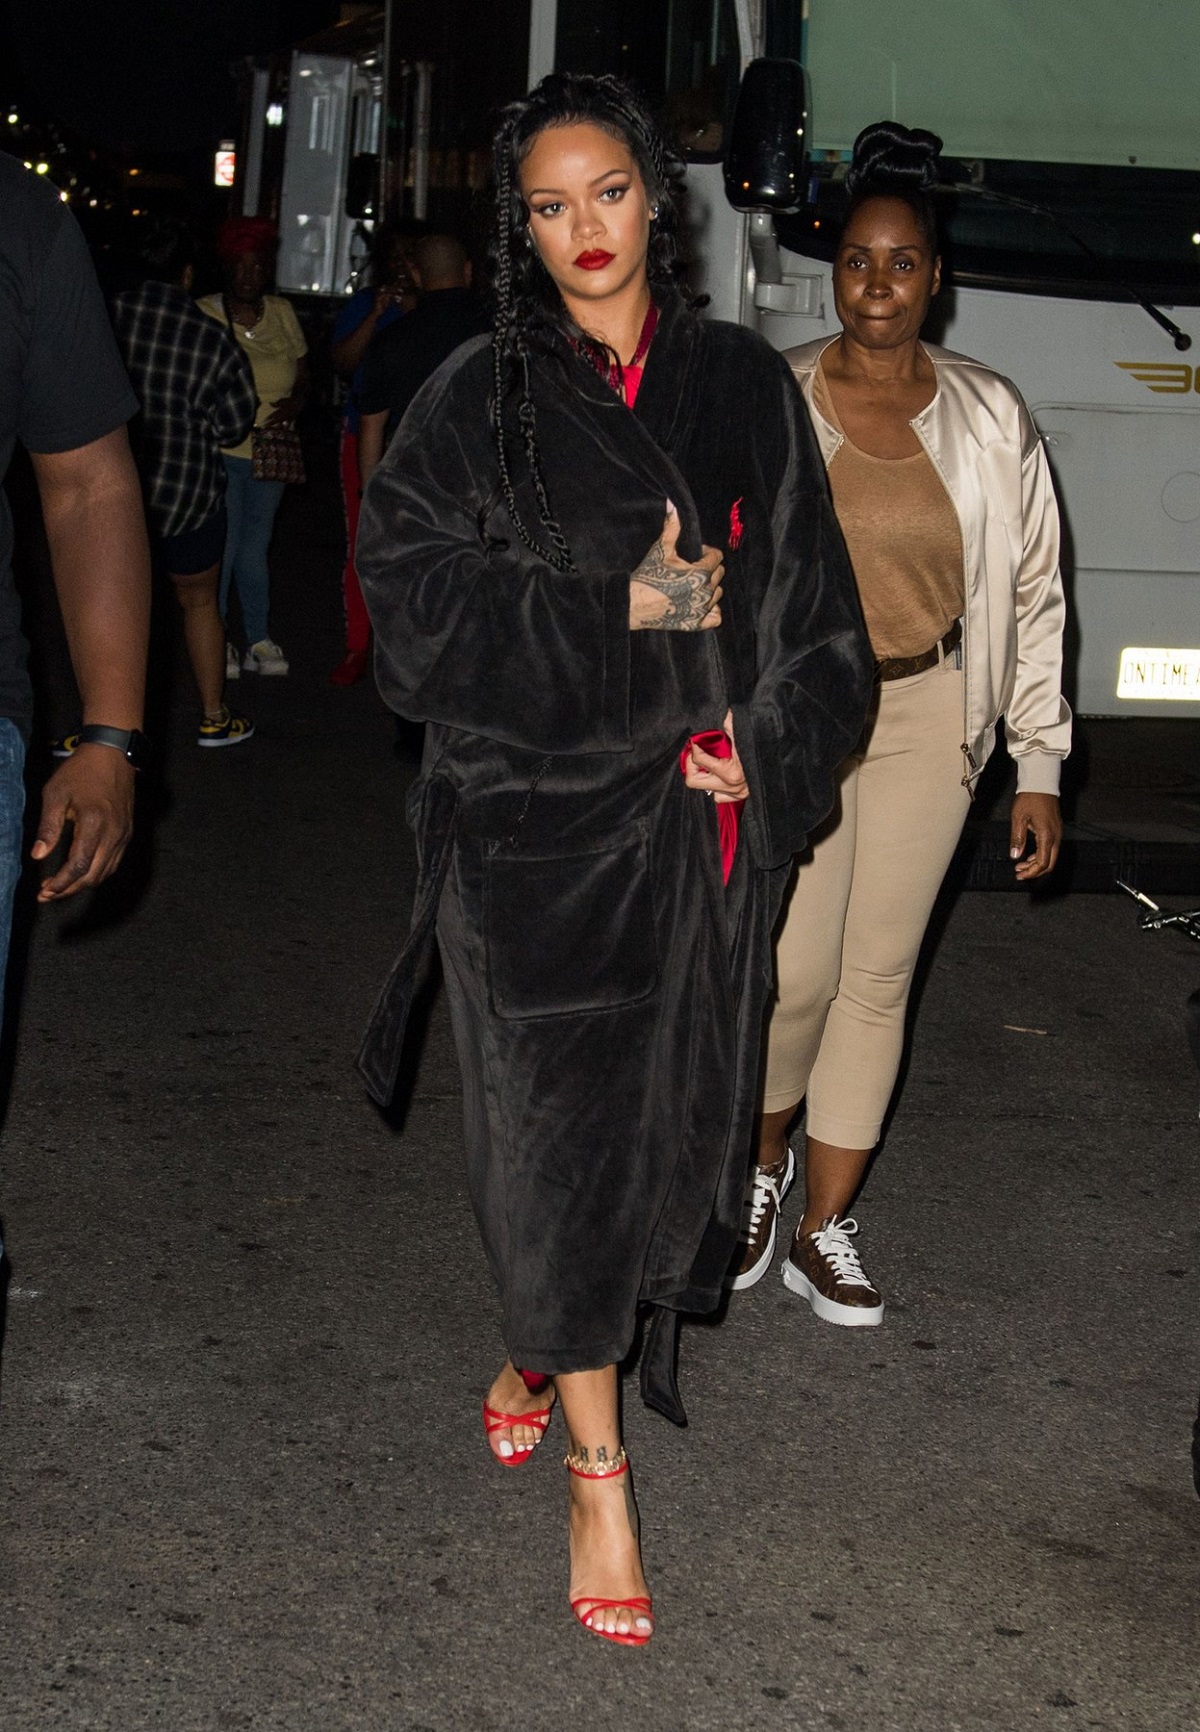 Apariția Rihannei într-un halat negru și tocuri roși în timp ce se află pe străzile din New York la filmarea noului său videoclip